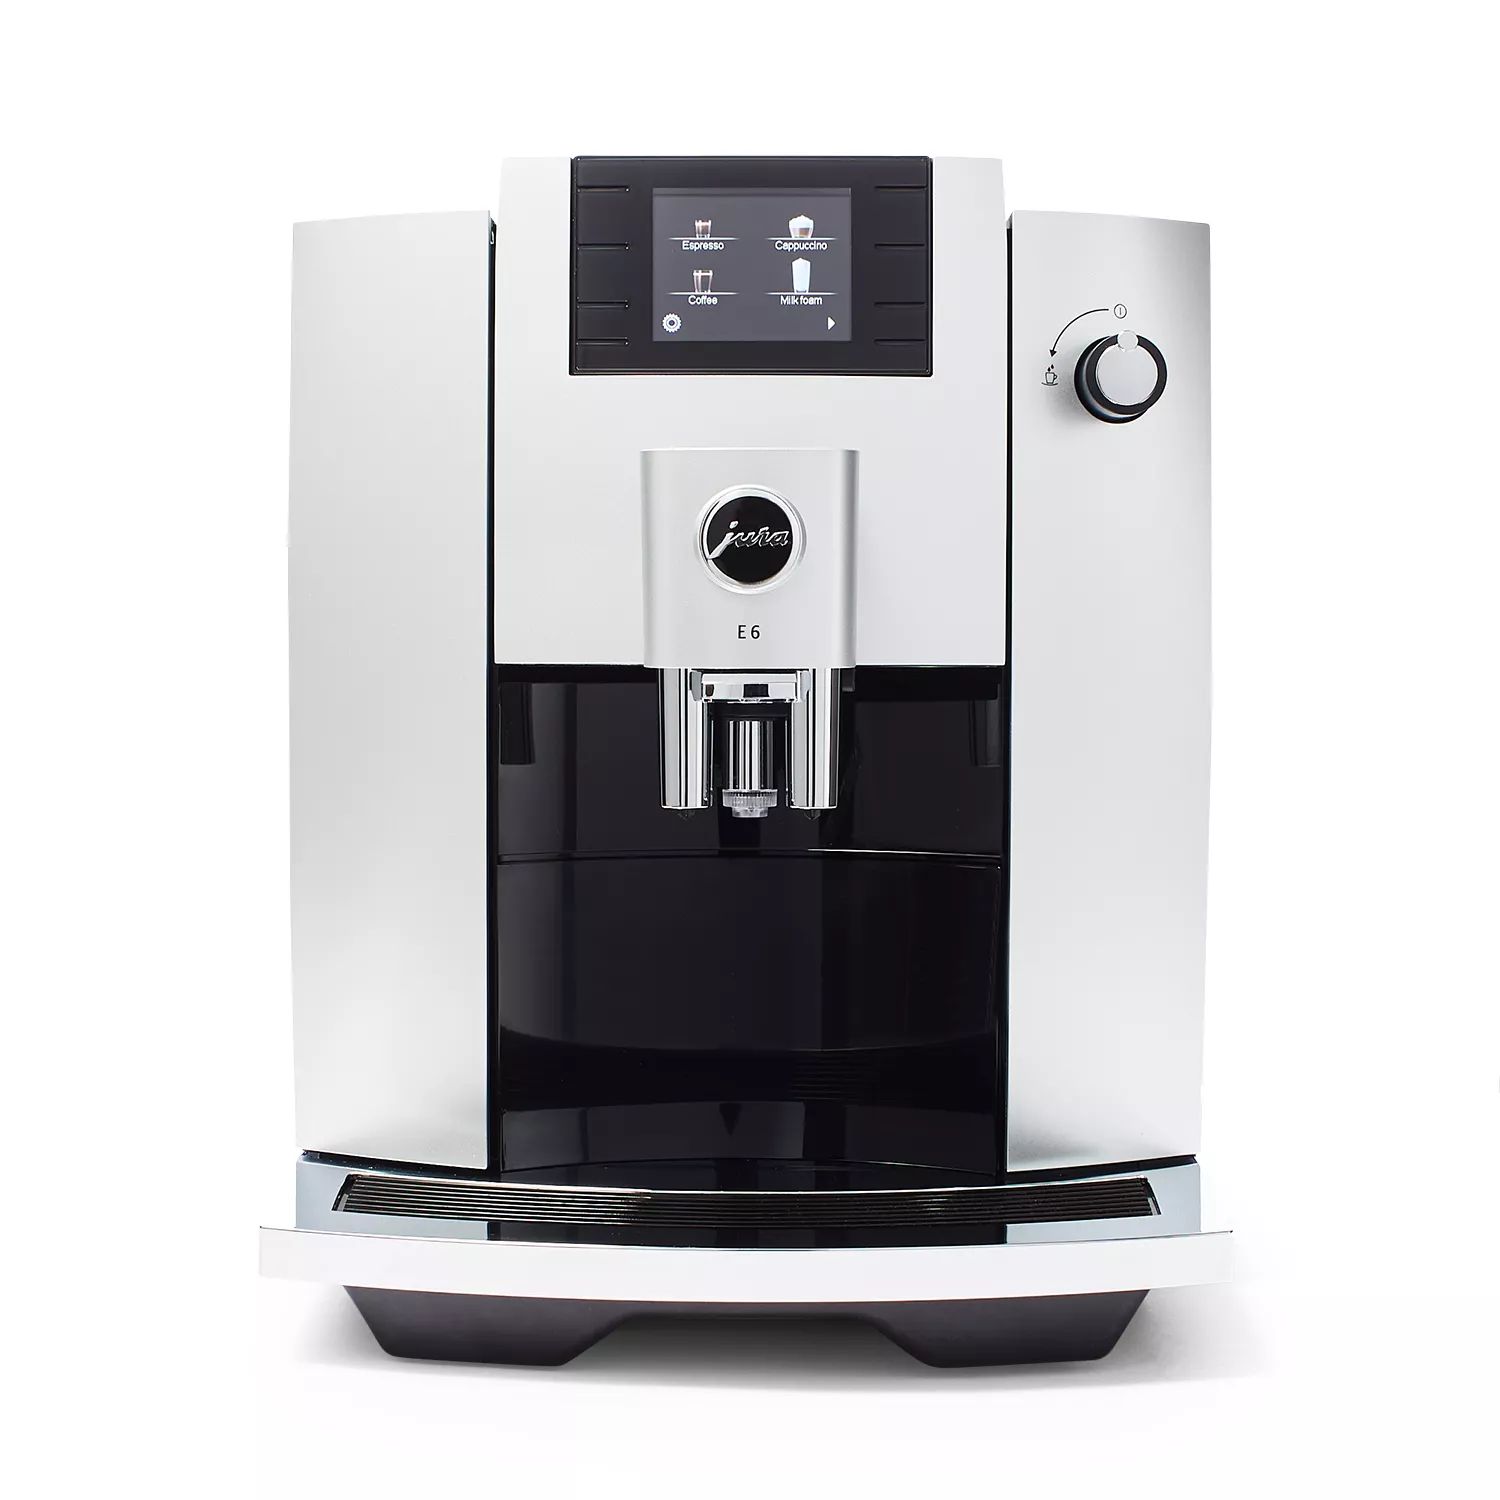 JURA E6 Automatic Coffee Machine | Sur La Table